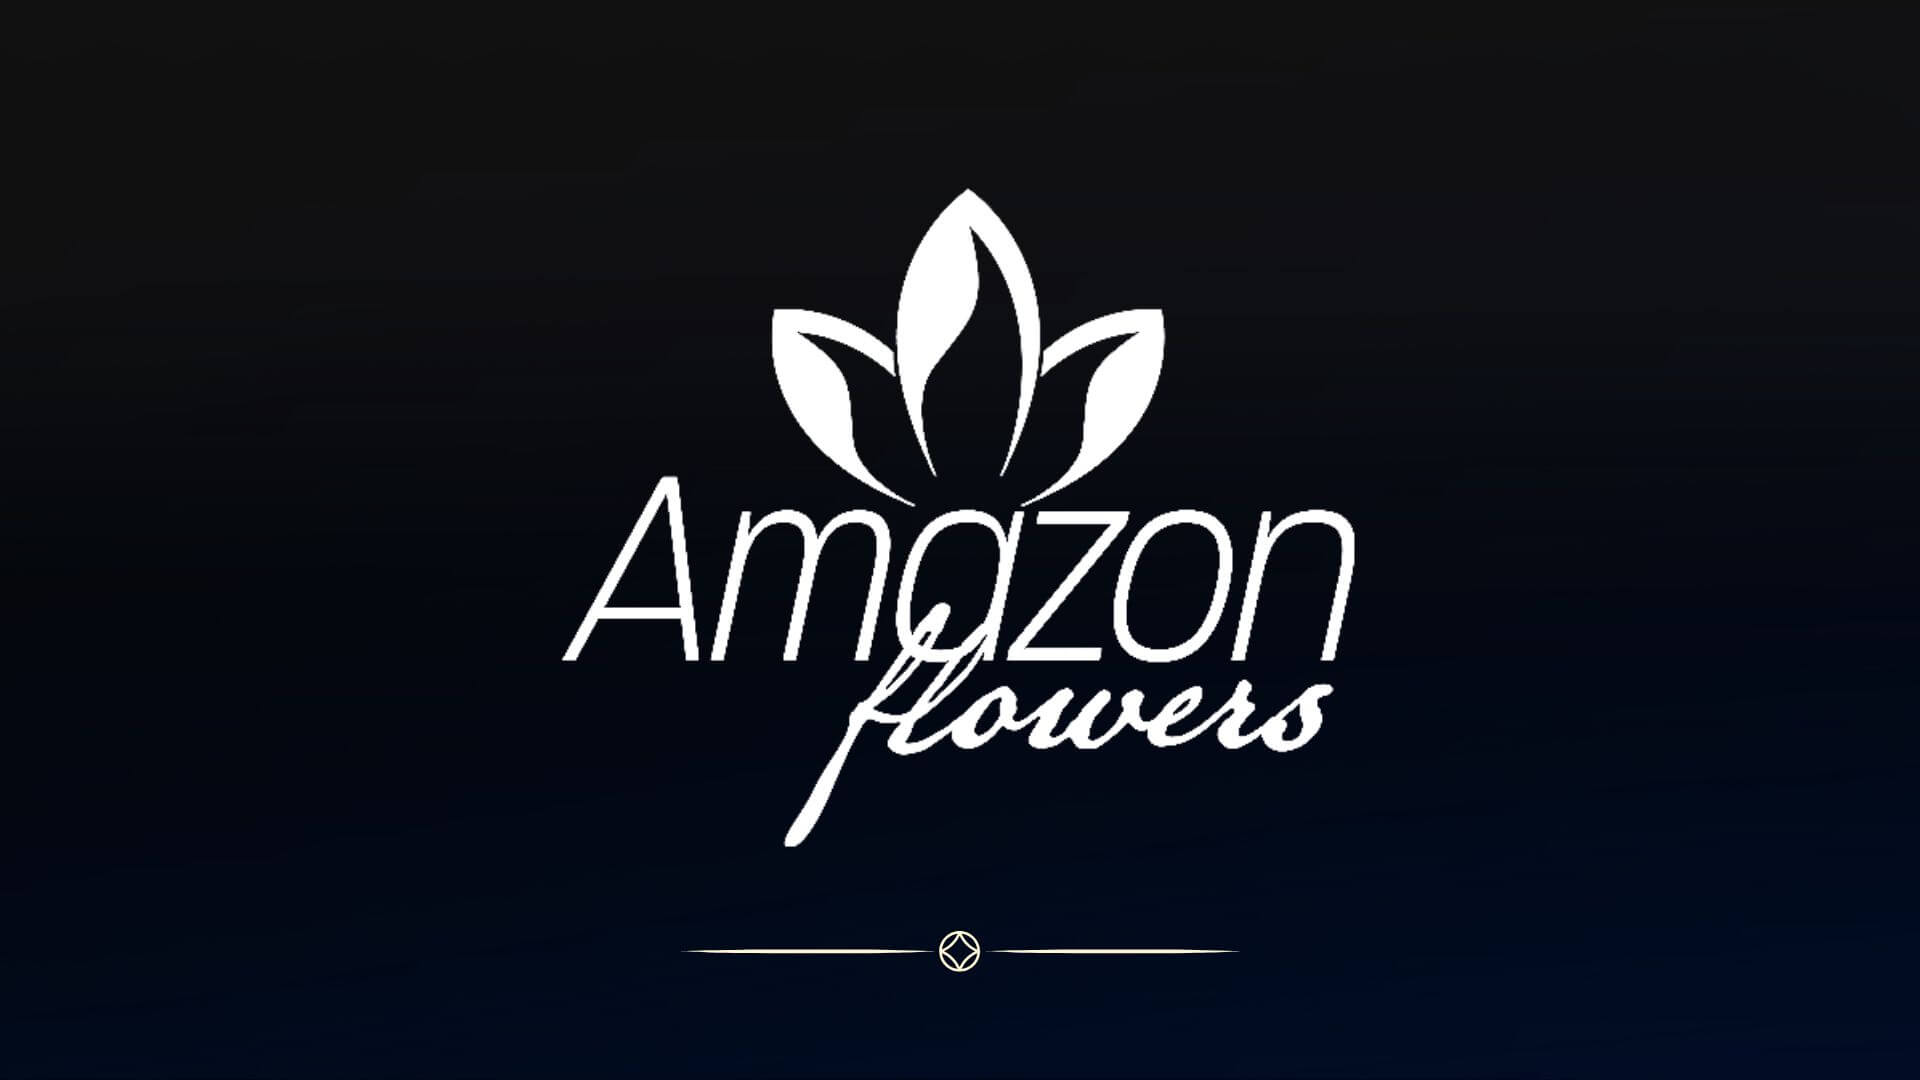 AMAZON FLOWERS